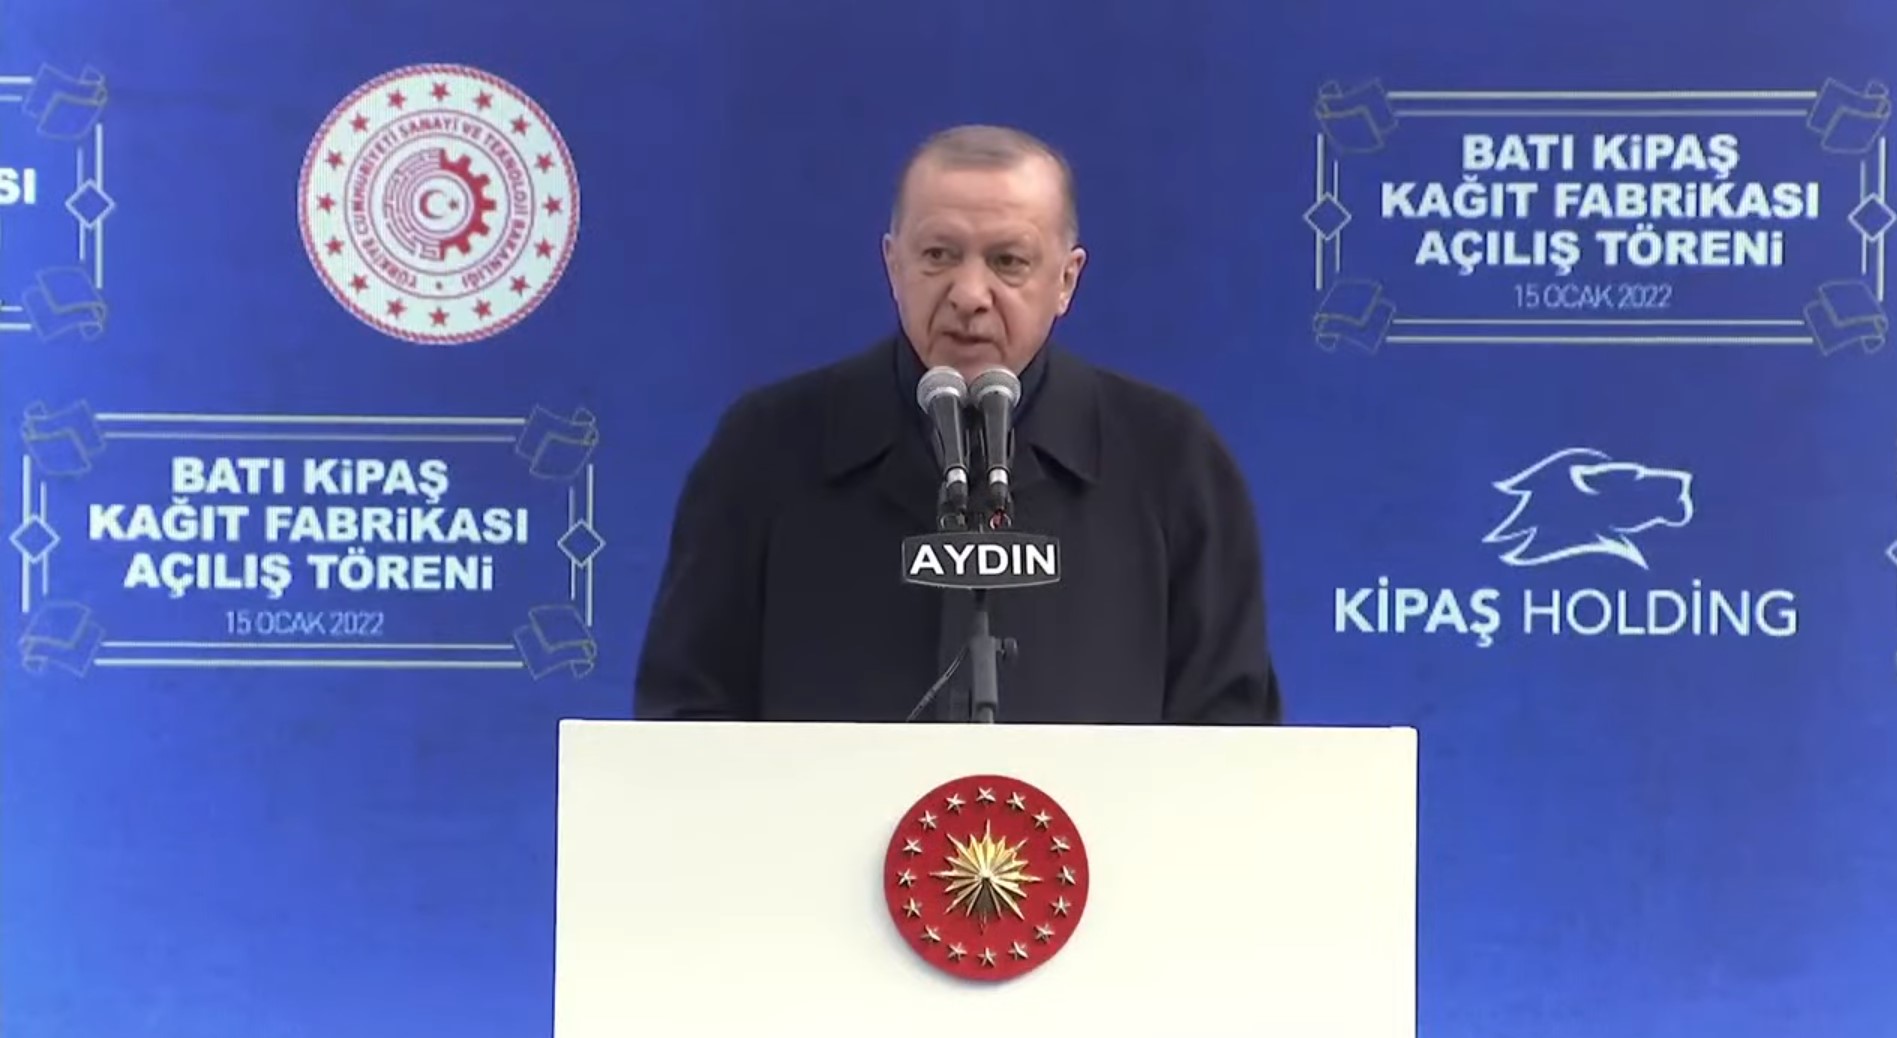 Cumhurbaşkanı Erdoğan Batı Kipaş Kağıt Fabrikasının açılış töreninde konuştu: Türkiye, Avrupa'nın imalat merkezi olan bir ülkedir